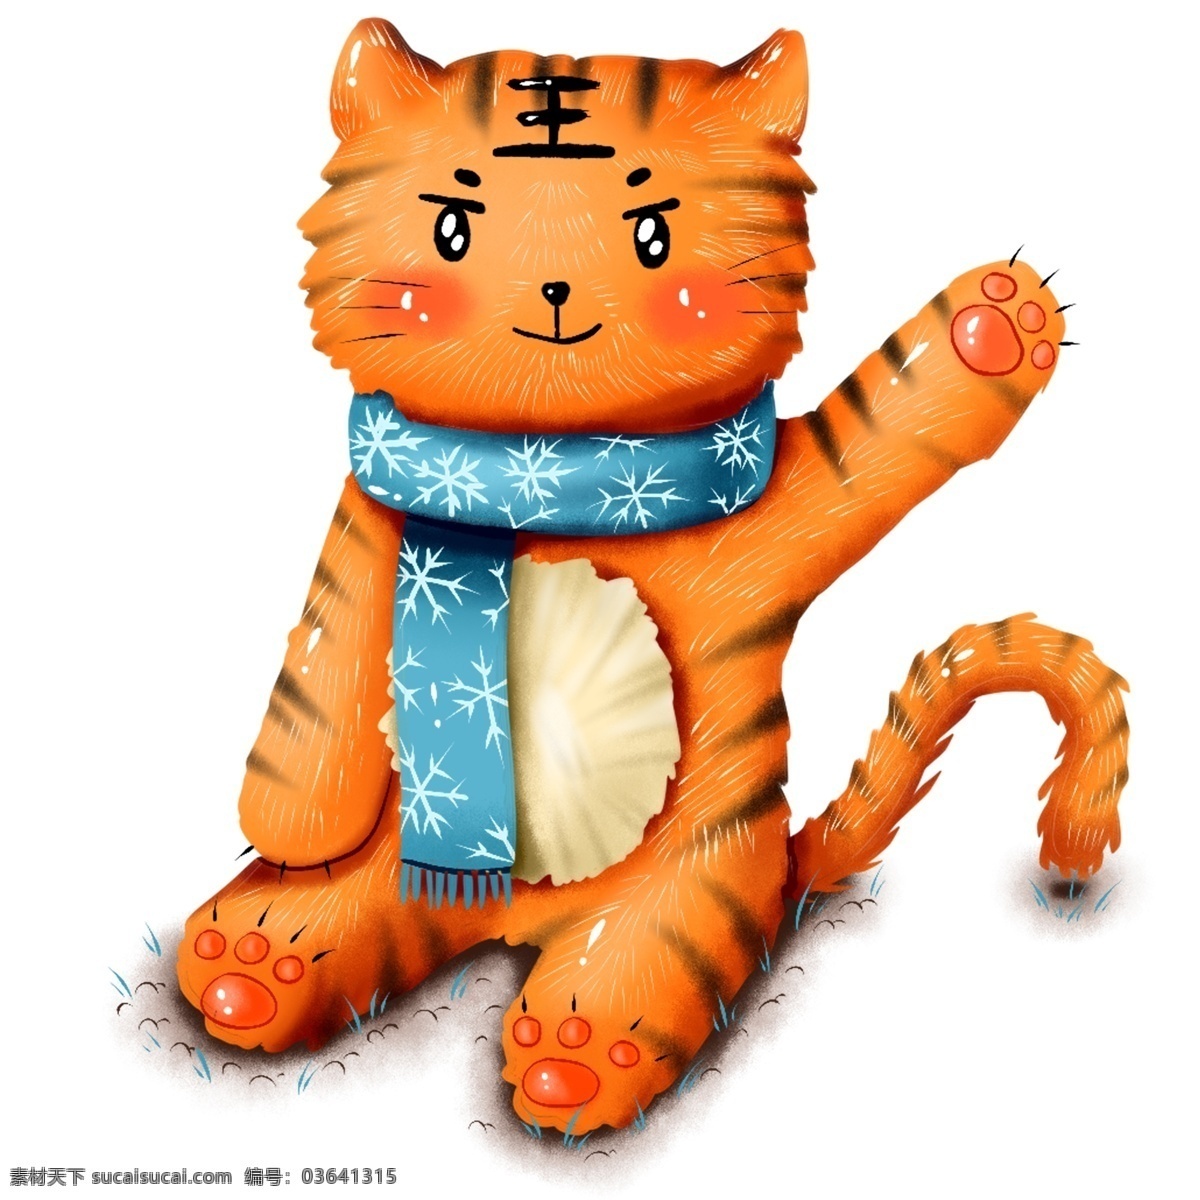 原创 手绘 动物 老虎 冬季 冬日 围巾 元素 海报素材 商用